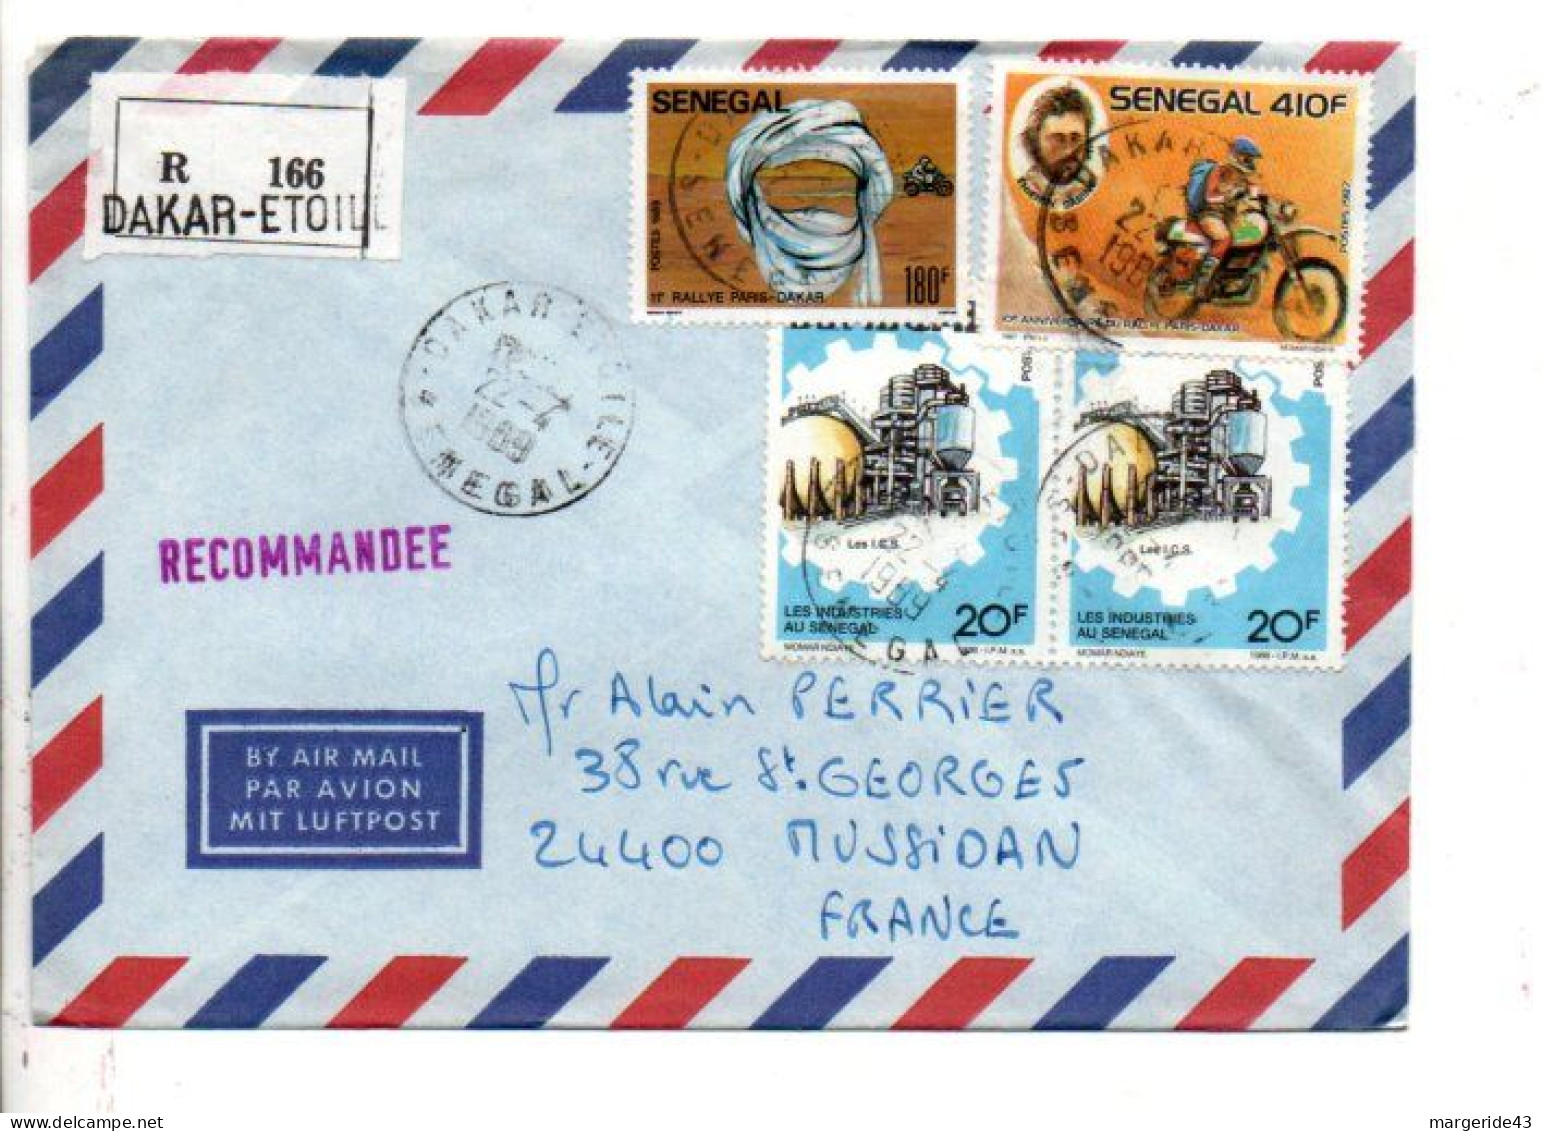 SENEGAL AFFRANCHISSEMENT COMPOSE SUR  LETTRE RECOMMANDEE DE DAKAR ETOILE POUR LA FRANCE 1969 - Sénégal (1960-...)